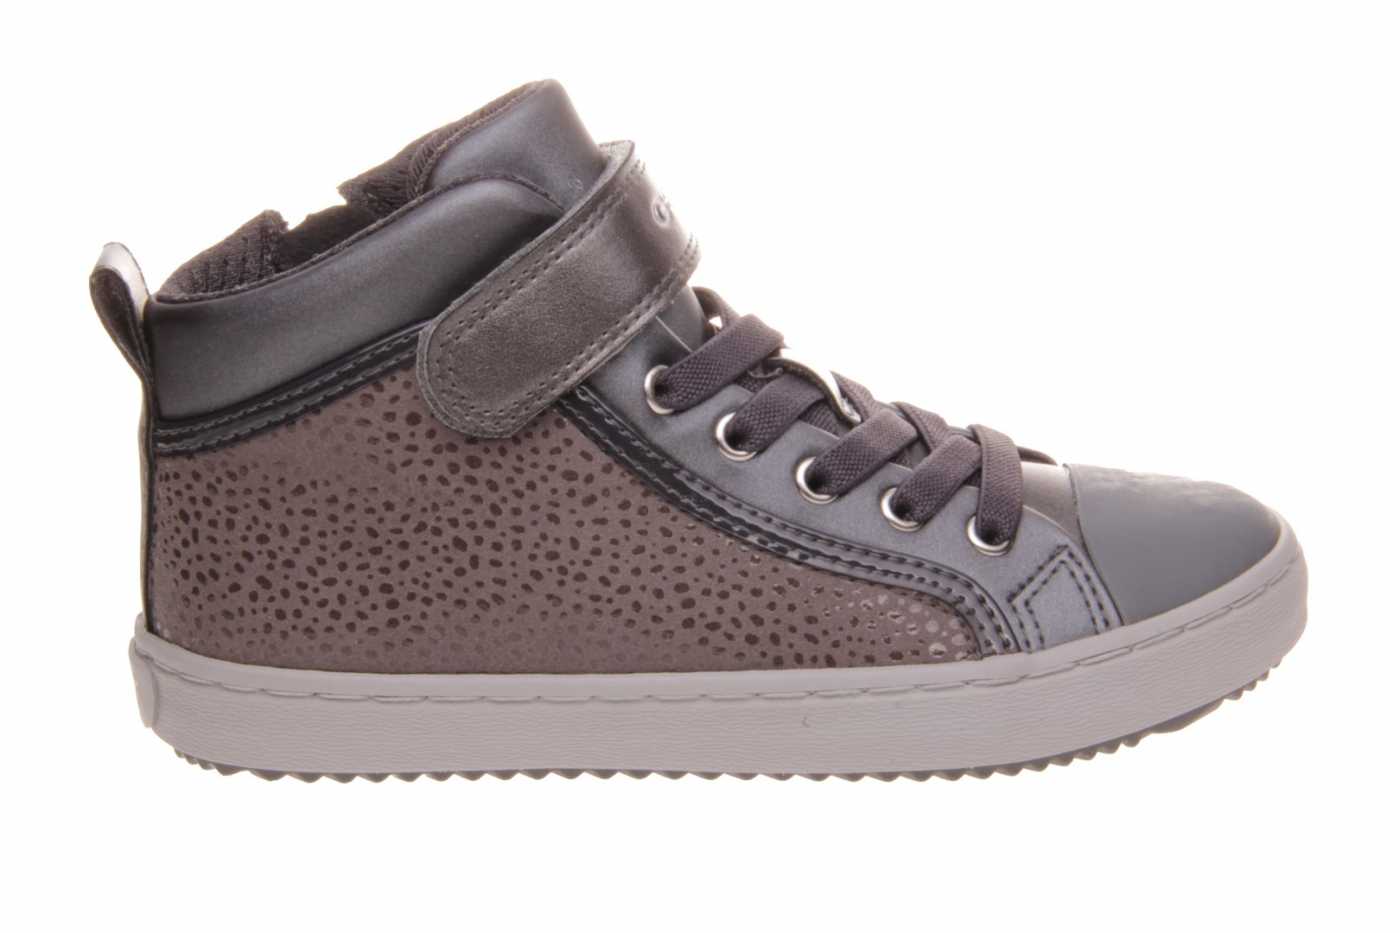 Comprar zapato GEOX para JOVEN estilo BOTINES-BOTA ALTA color GRIS PIEL